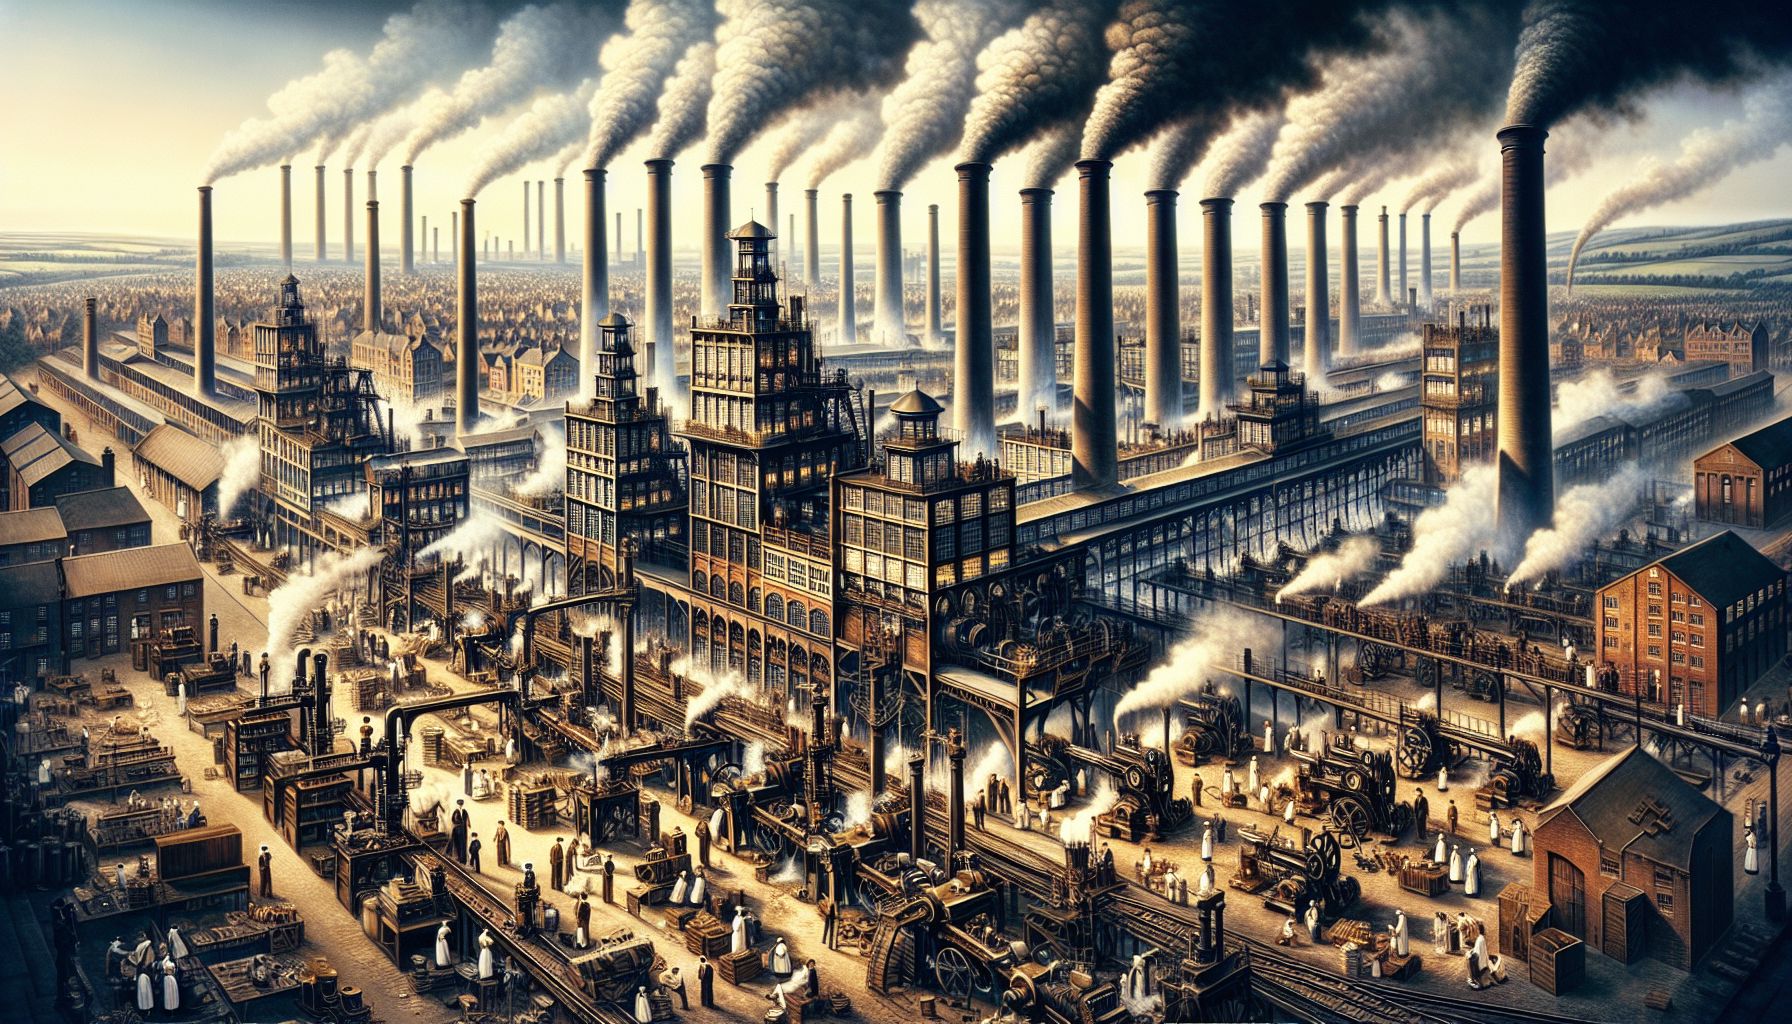 Det moderne samfunds fundament: Industrialisering og produktion